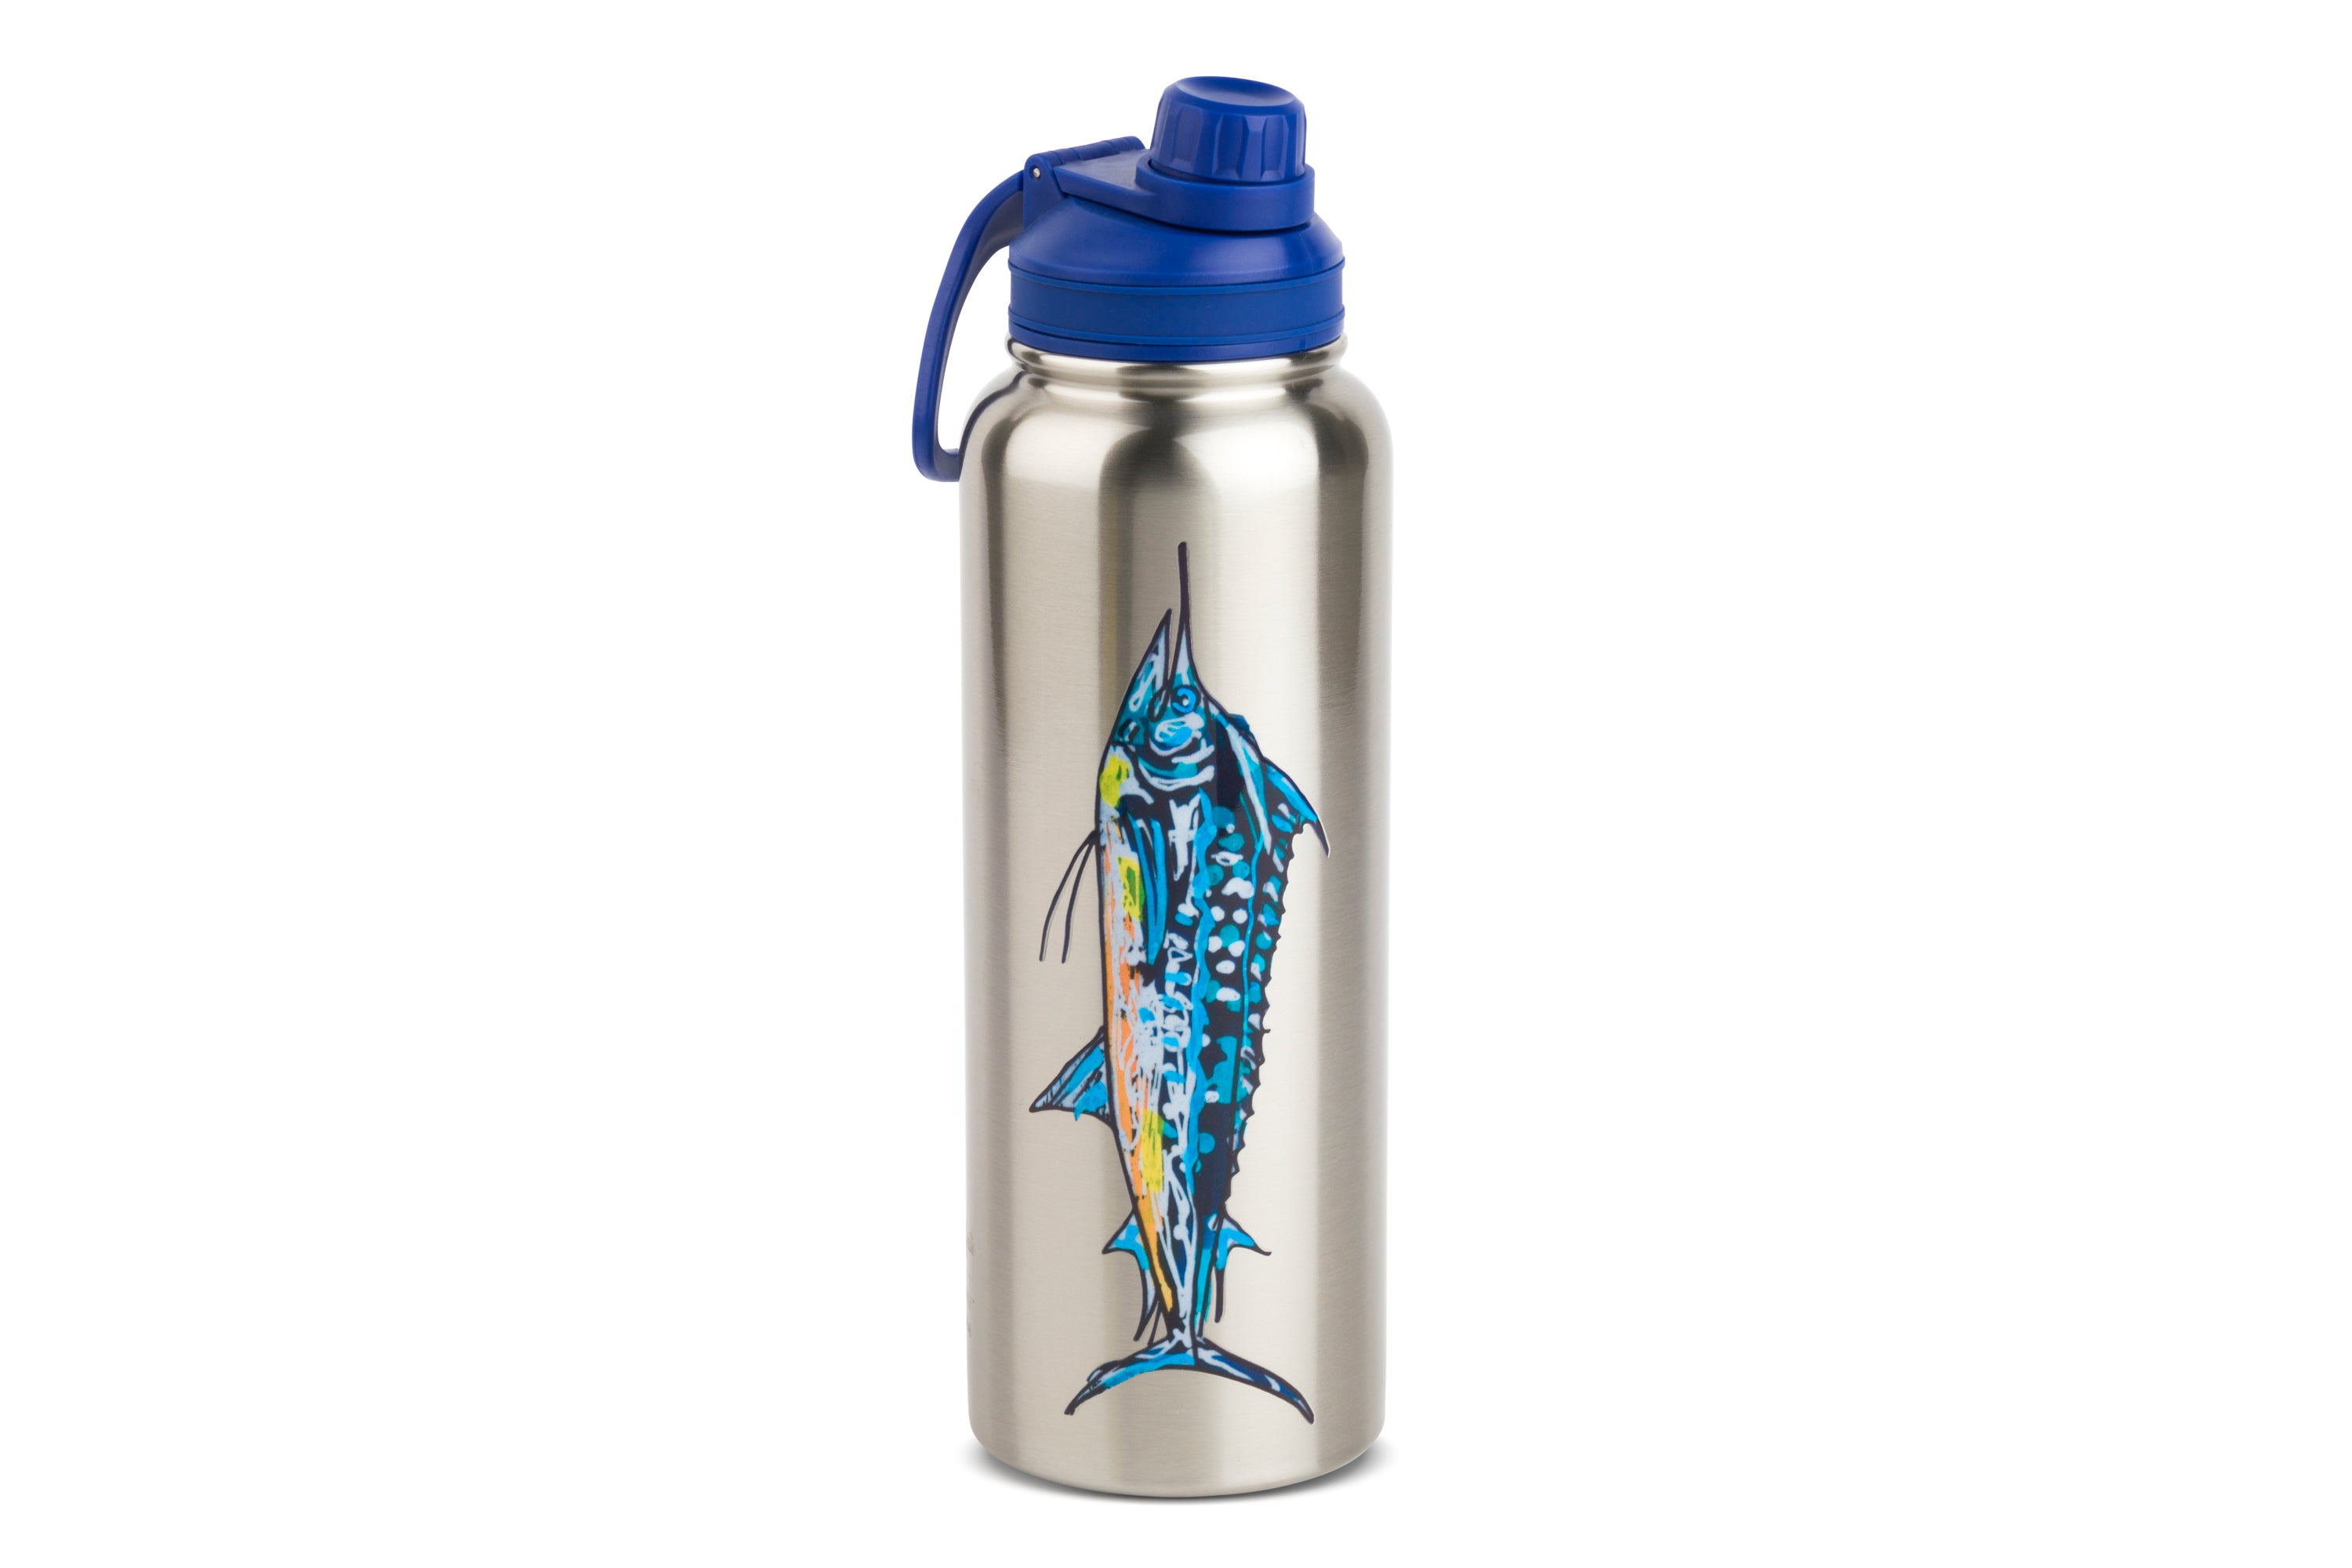 Hard Rock Music Festival Flower Power Water Bottle in Blue